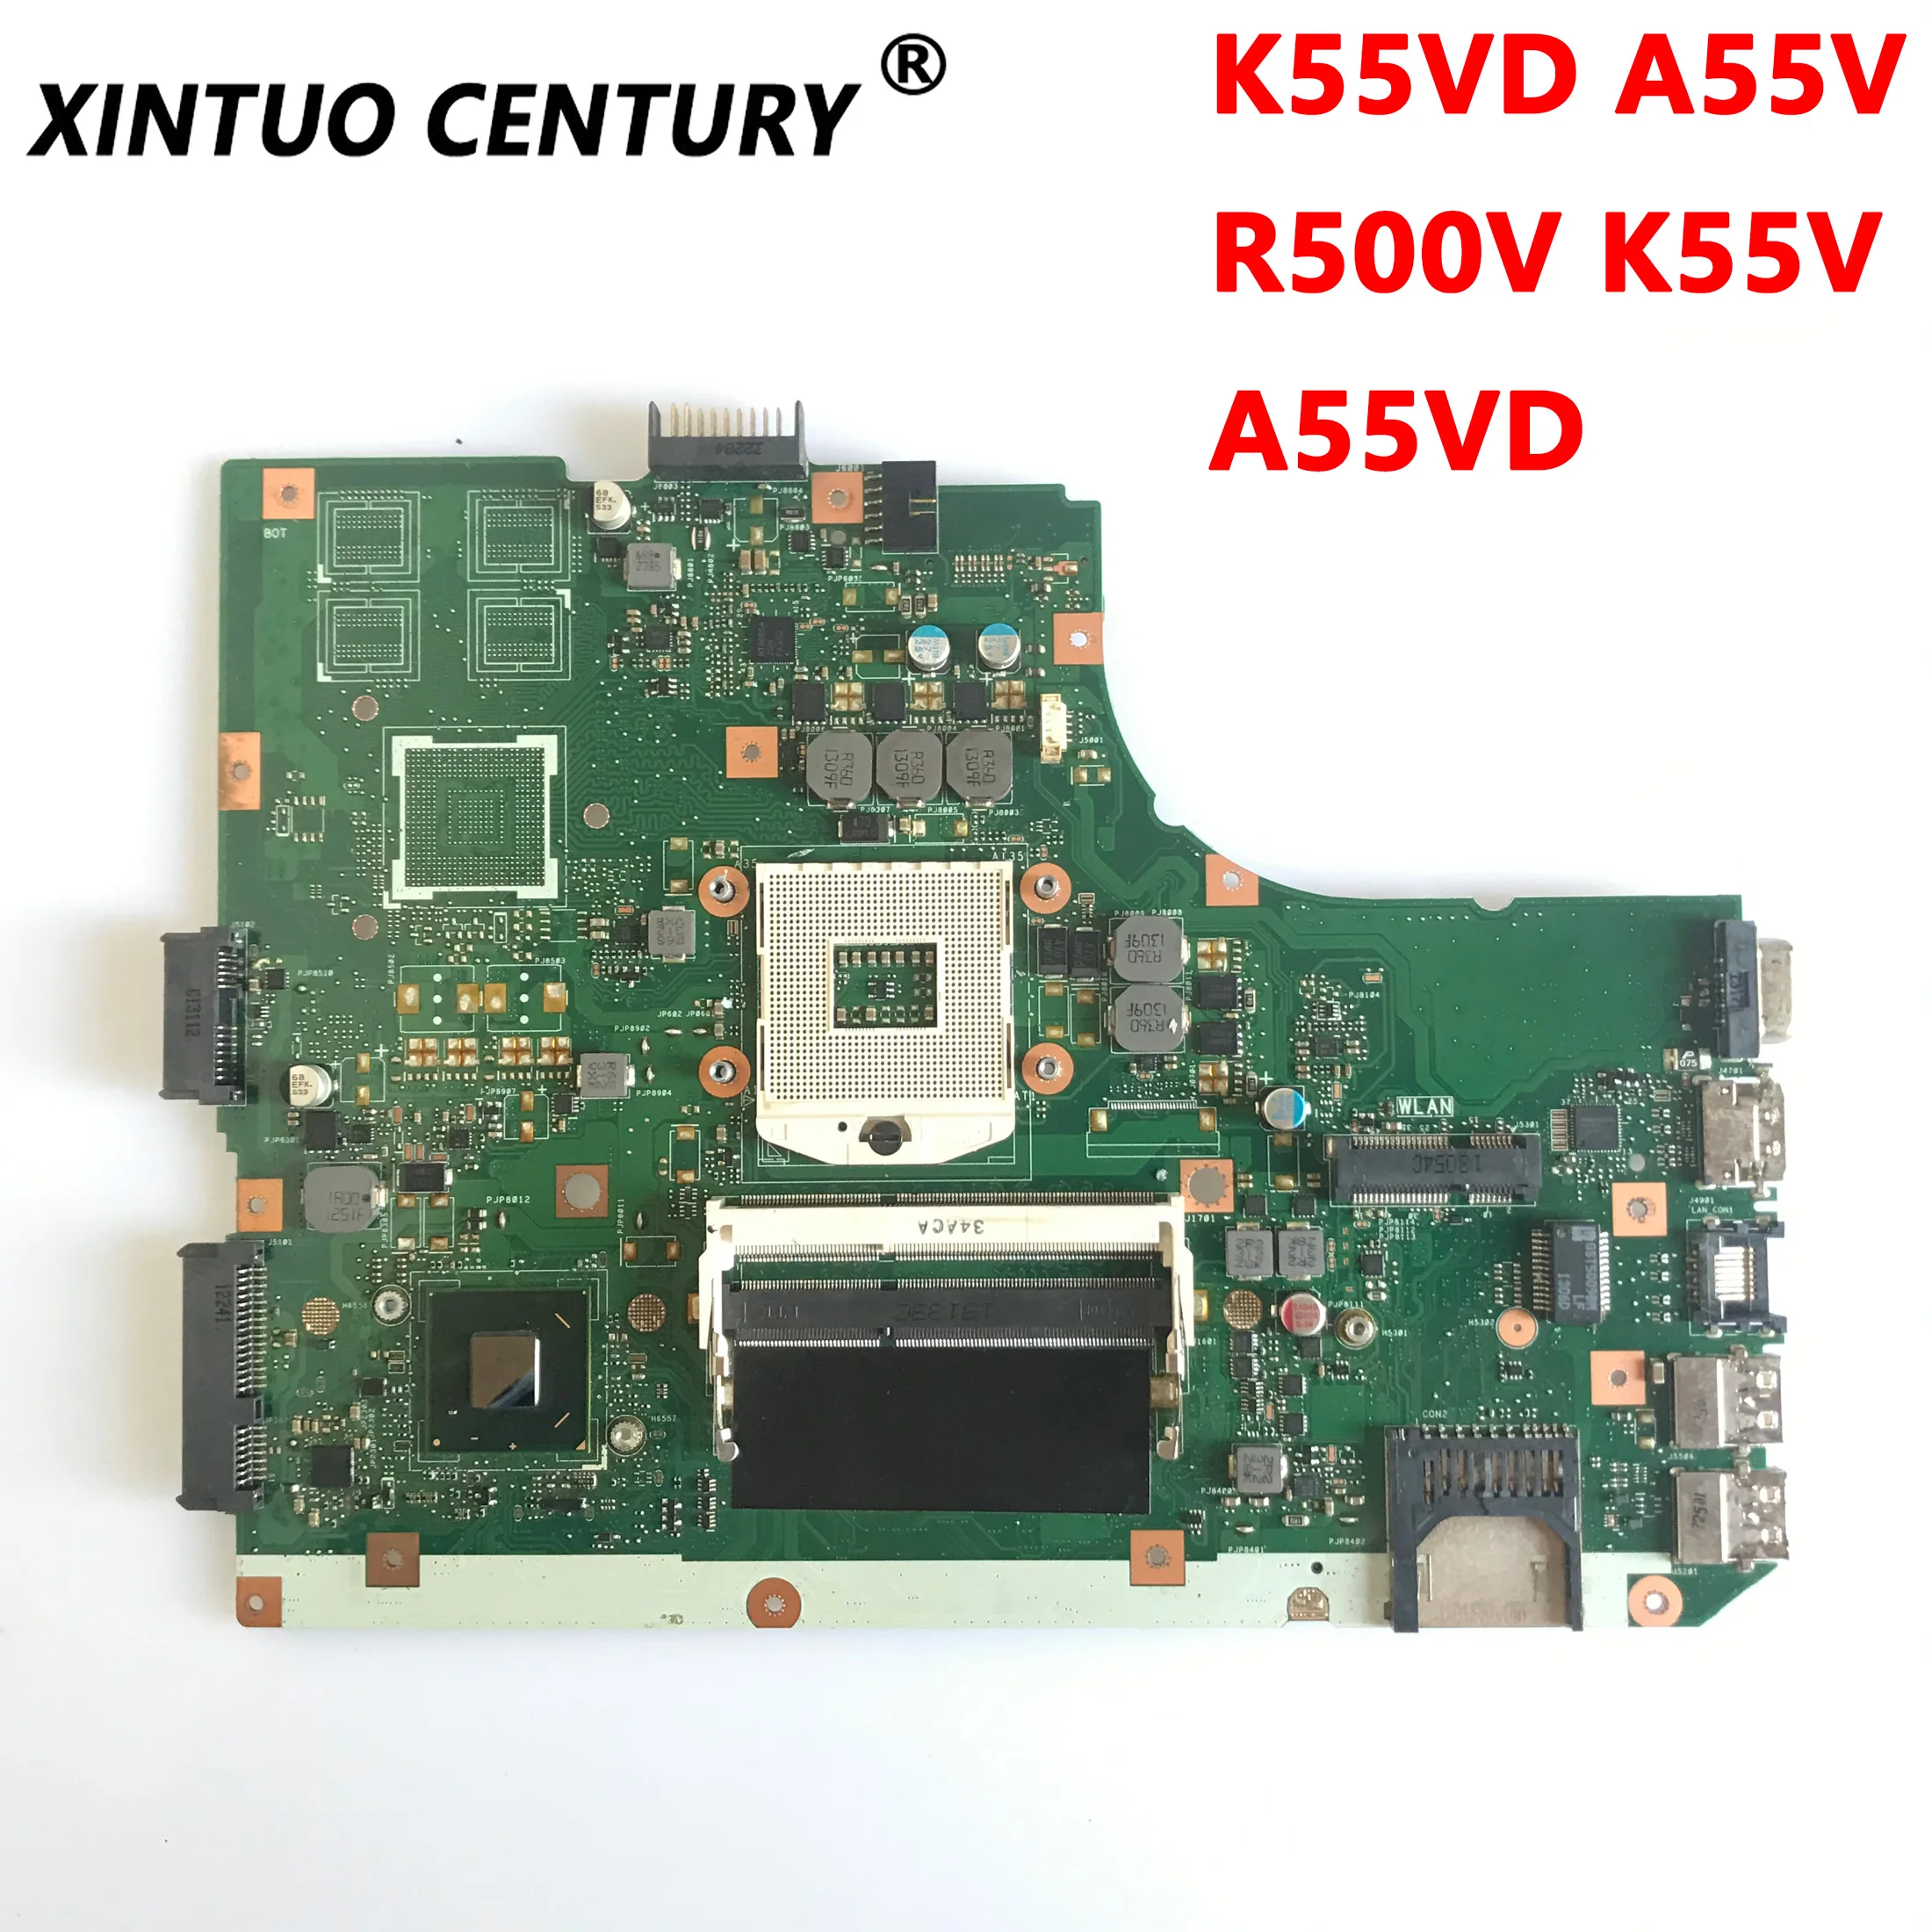 K55VD Original Motherboard For ASUS K55VD A55V R500V K55V A55VD Laptop Motherboard REV.3.0/3.1 DDR3 100% Test Work